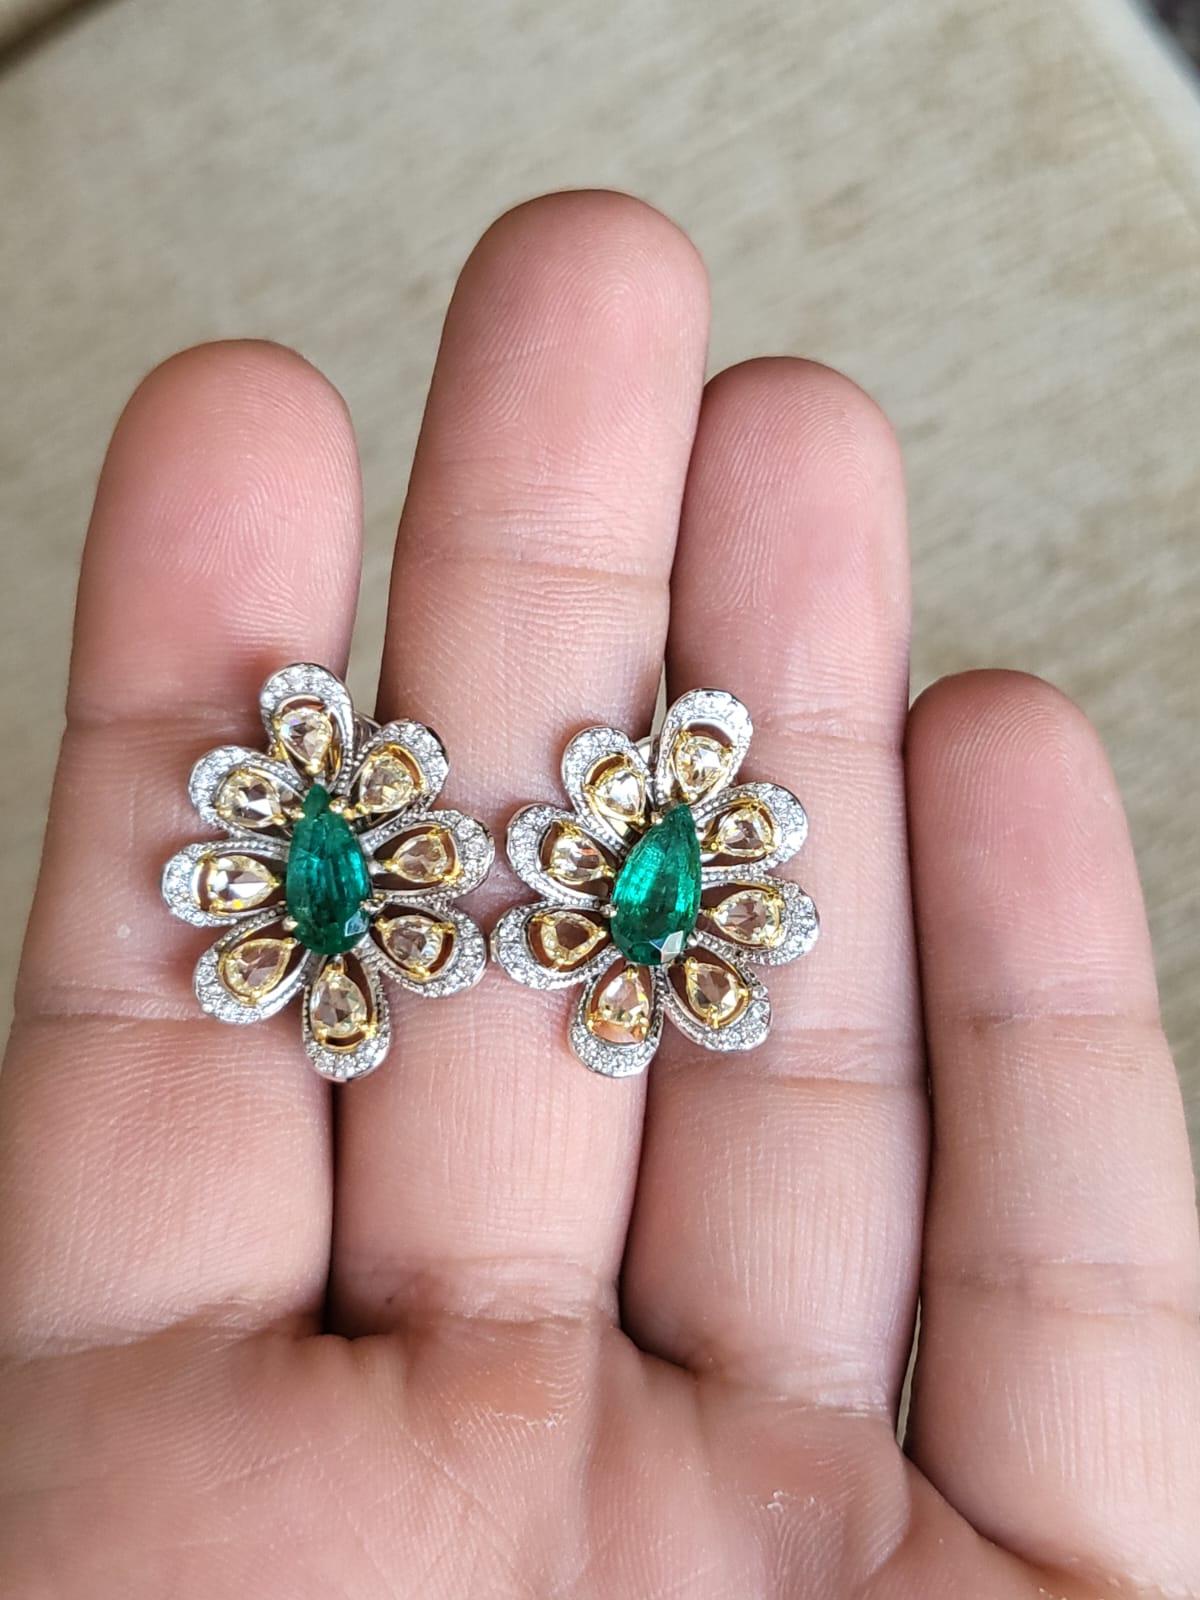 Set in 18K Gold, 2.12 Carats, Zambian Emerald & Rose Cut Diamonds Stud Earrings For Sale 1